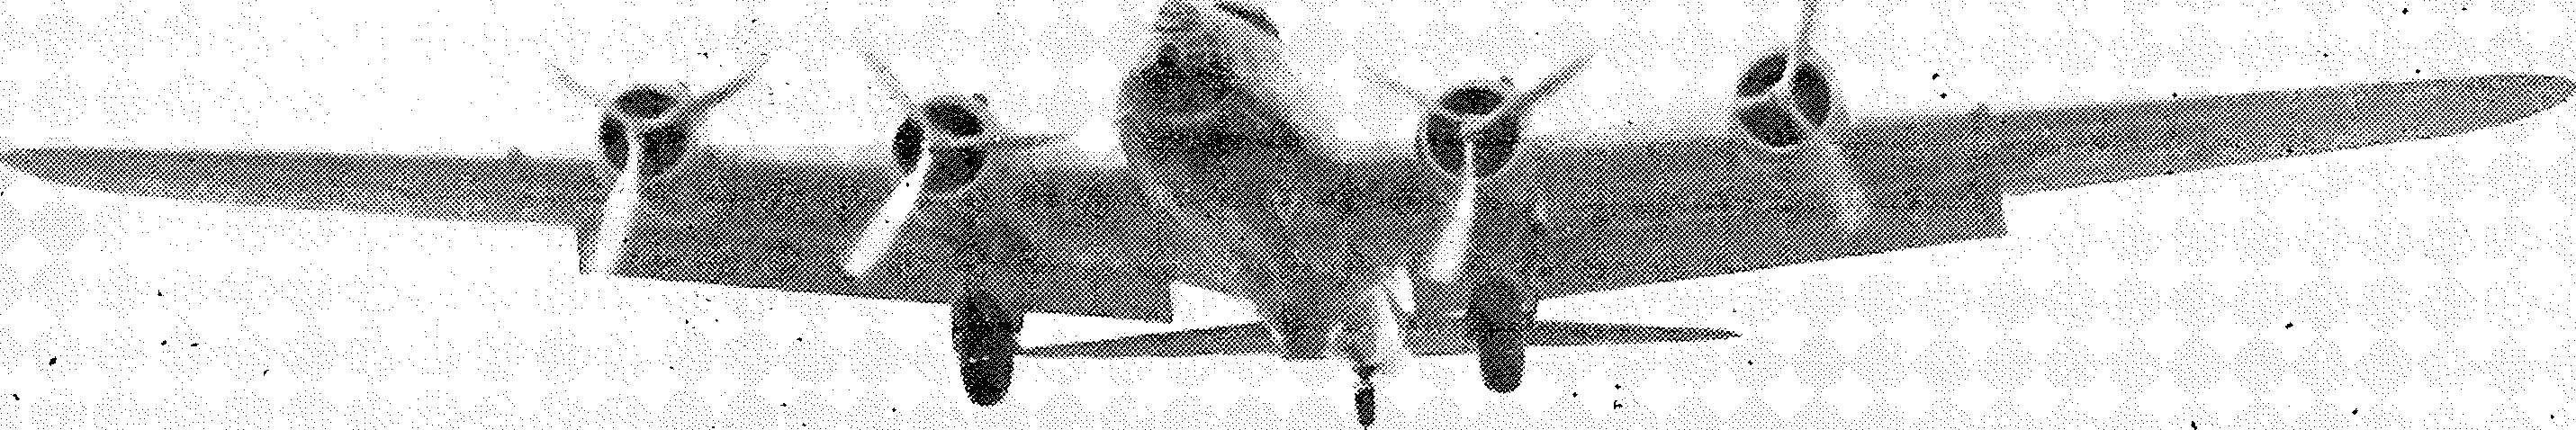 Luftfahrt und Luftverkehr sowie Luftwaffe im Dritten Reich 1936